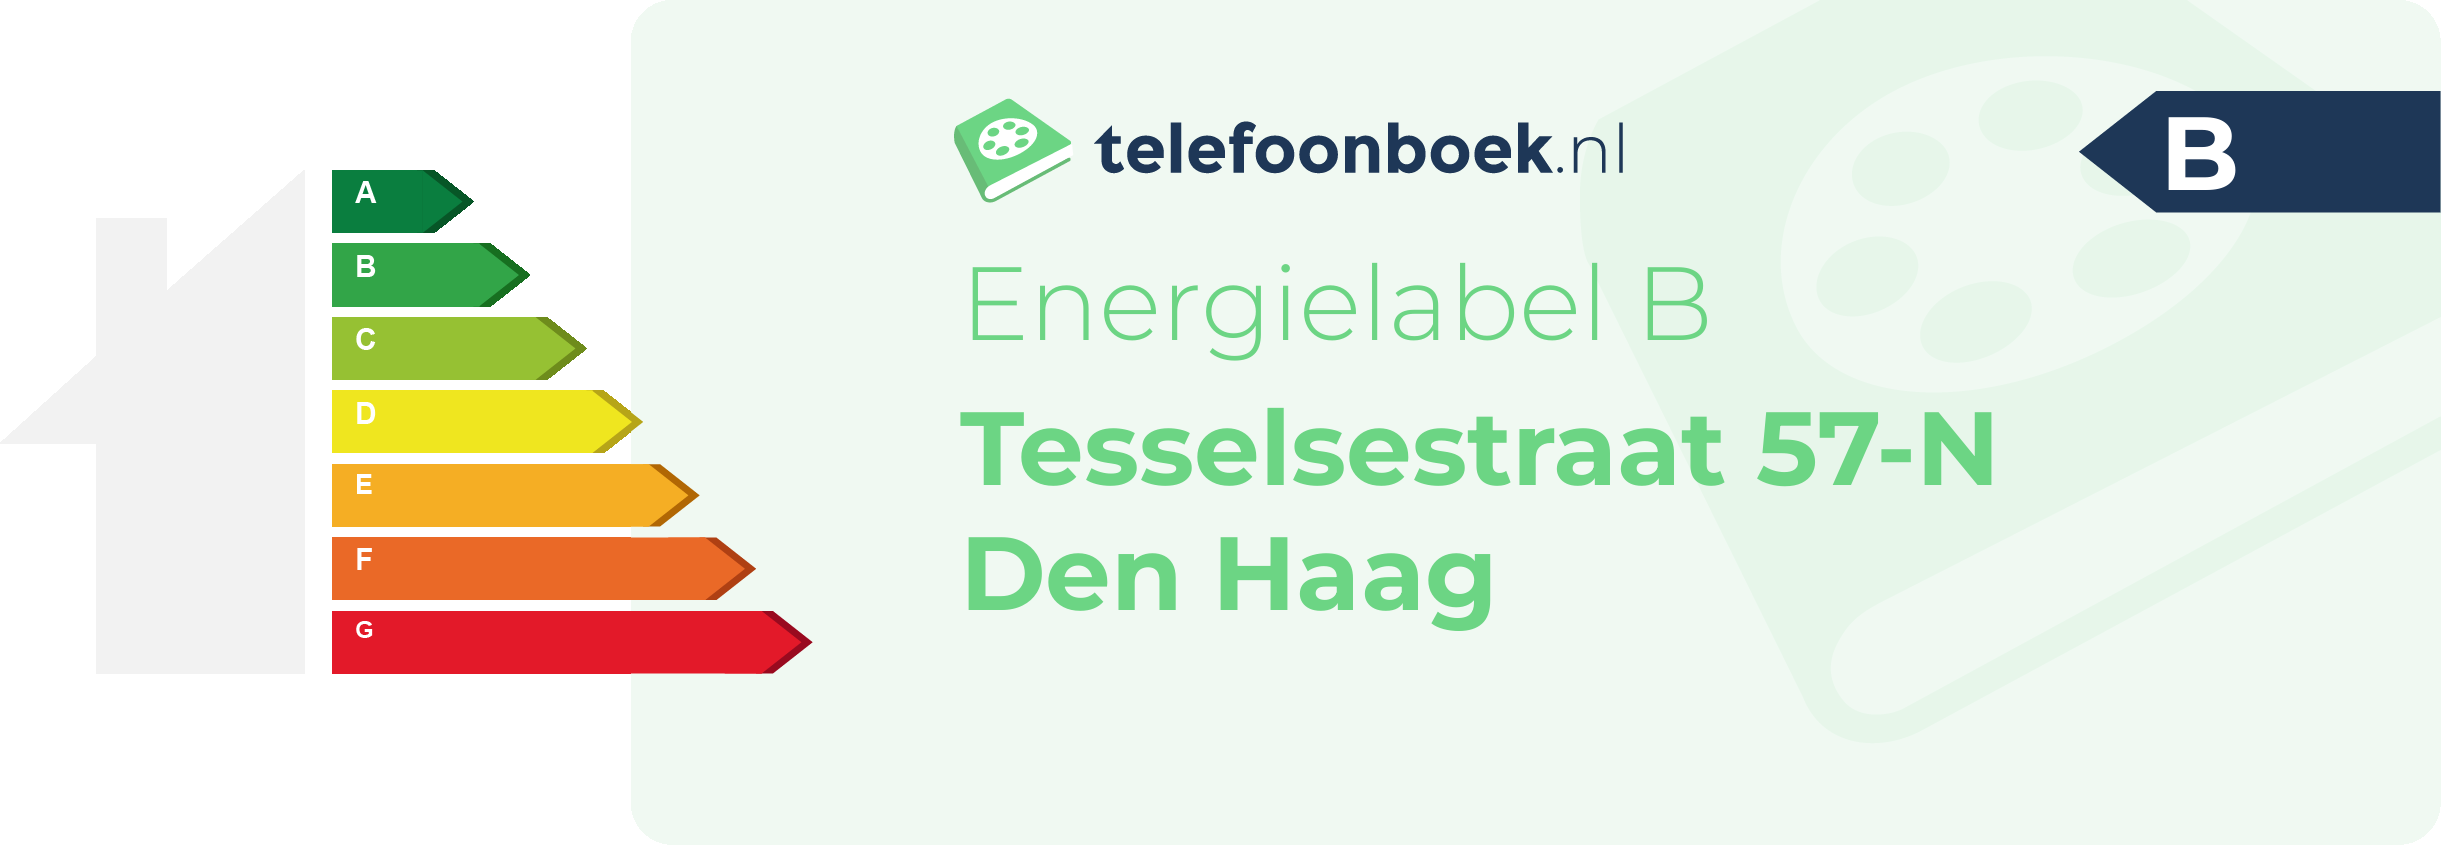 Energielabel Tesselsestraat 57-N Den Haag